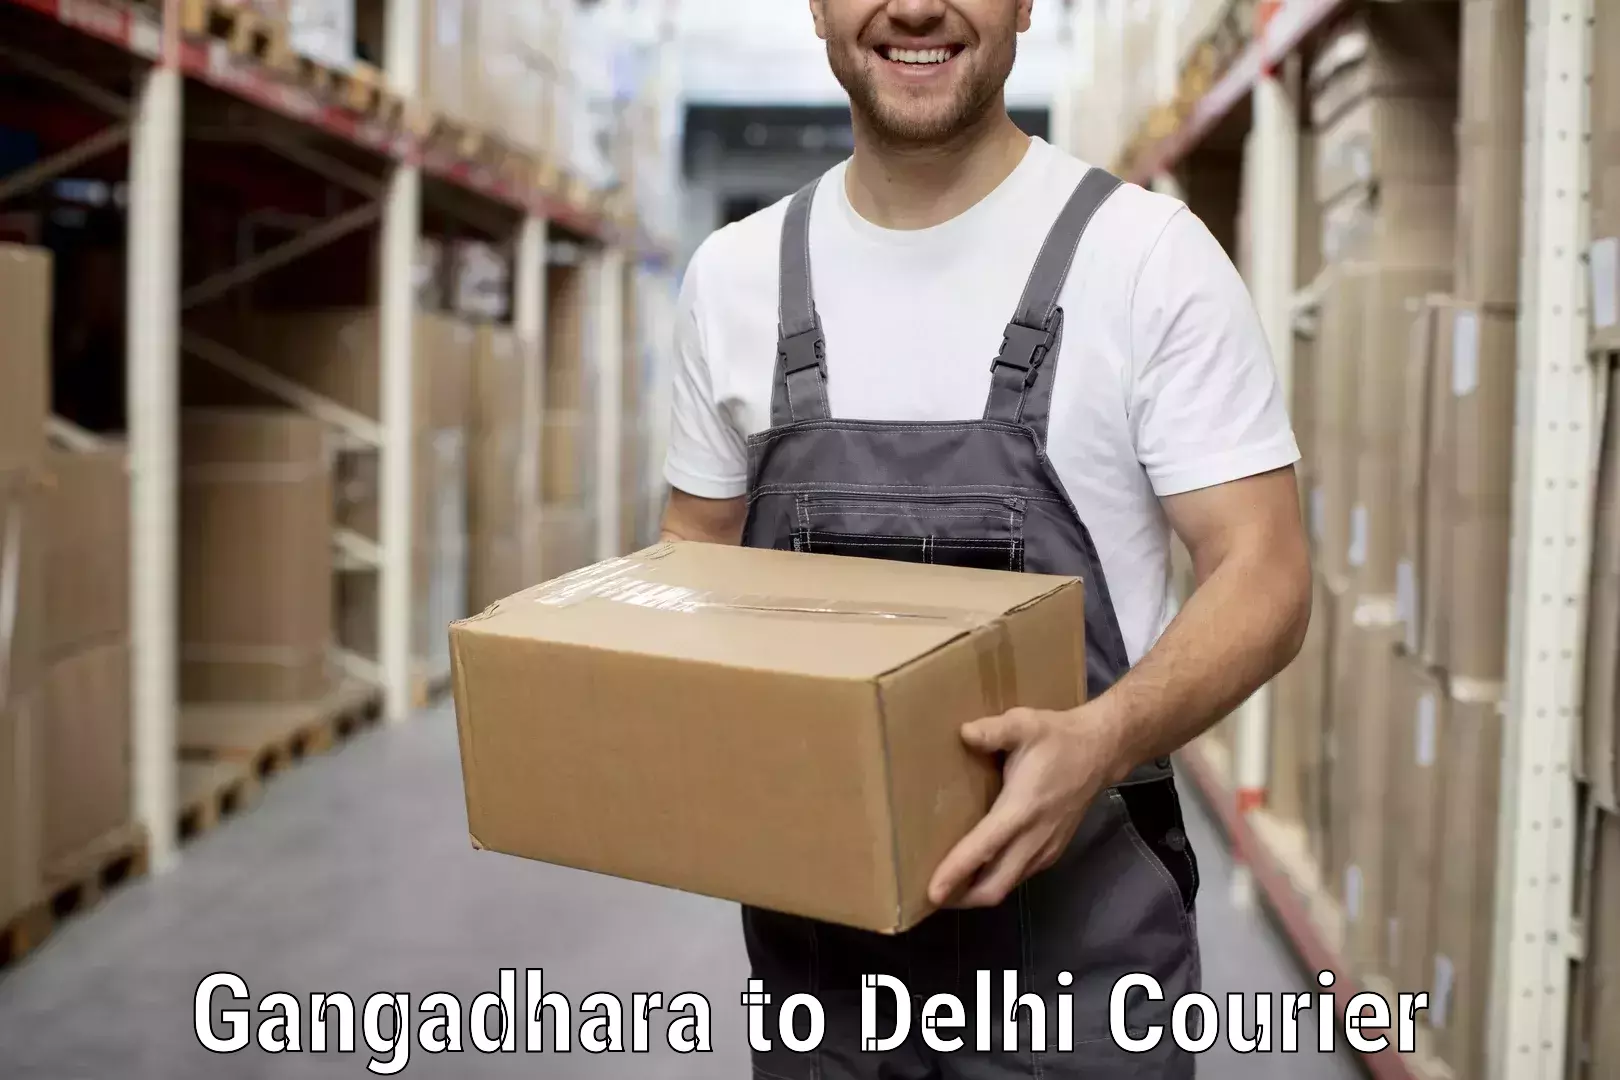 Professional moving company Gangadhara to East Delhi